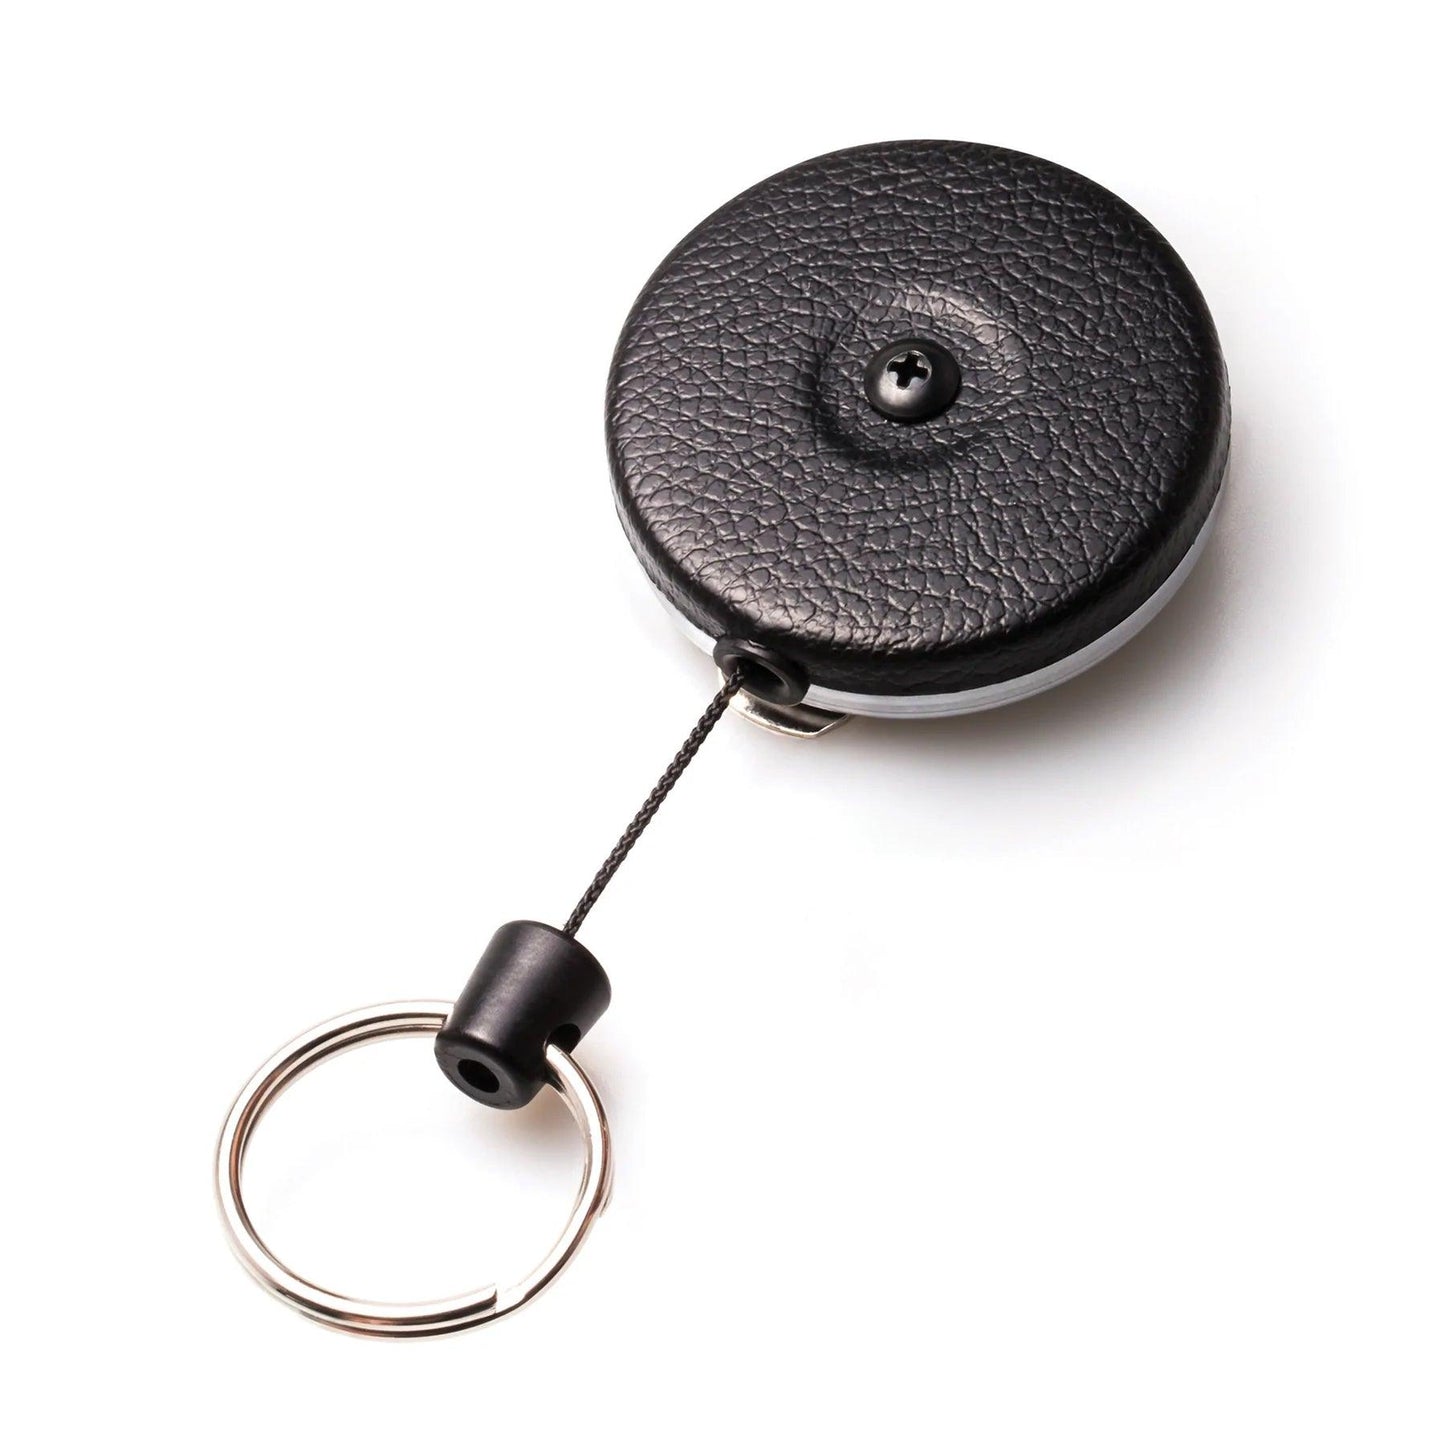 Key-Bak Original Nyckeljojo - 120 cm (Hållare & Fickor) från Key-Bak. | TacNGear - Utrustning för polis och militär och outdoor.